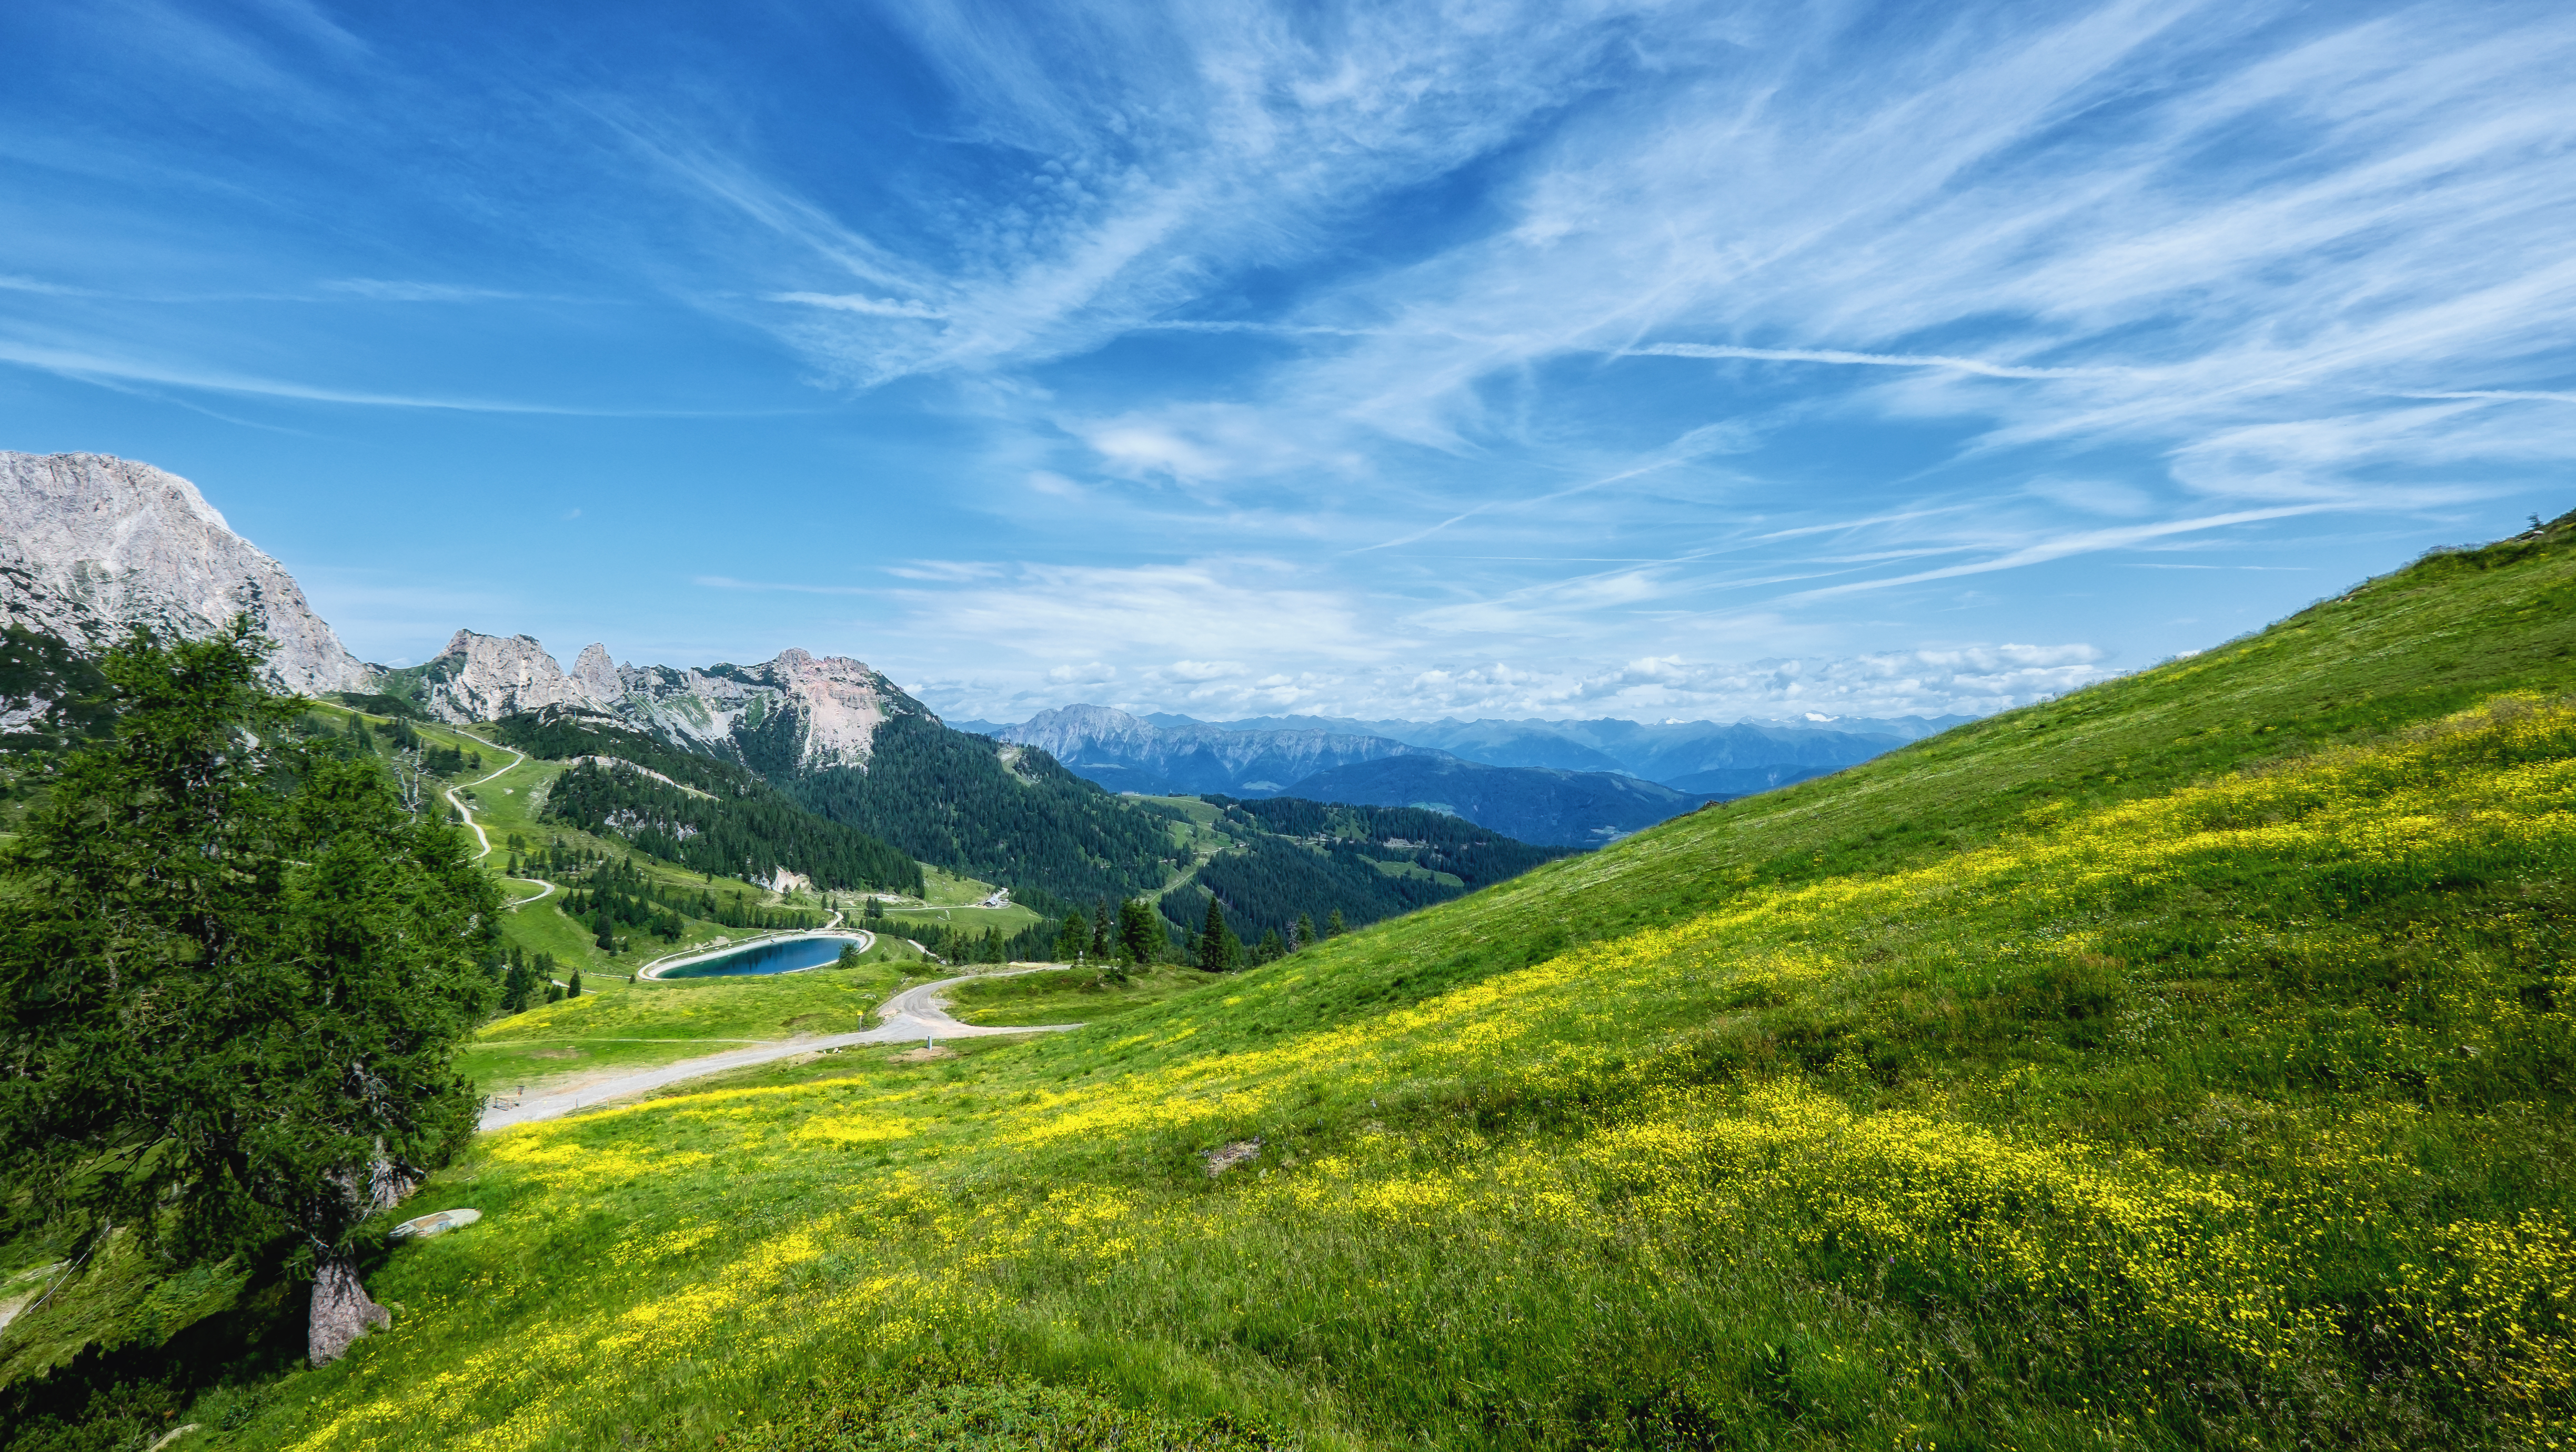 Скачать обои бесплатно Пейзаж, Небо, Облака, Гора, Австрия, Панорама, Земля/природа картинка на рабочий стол ПК